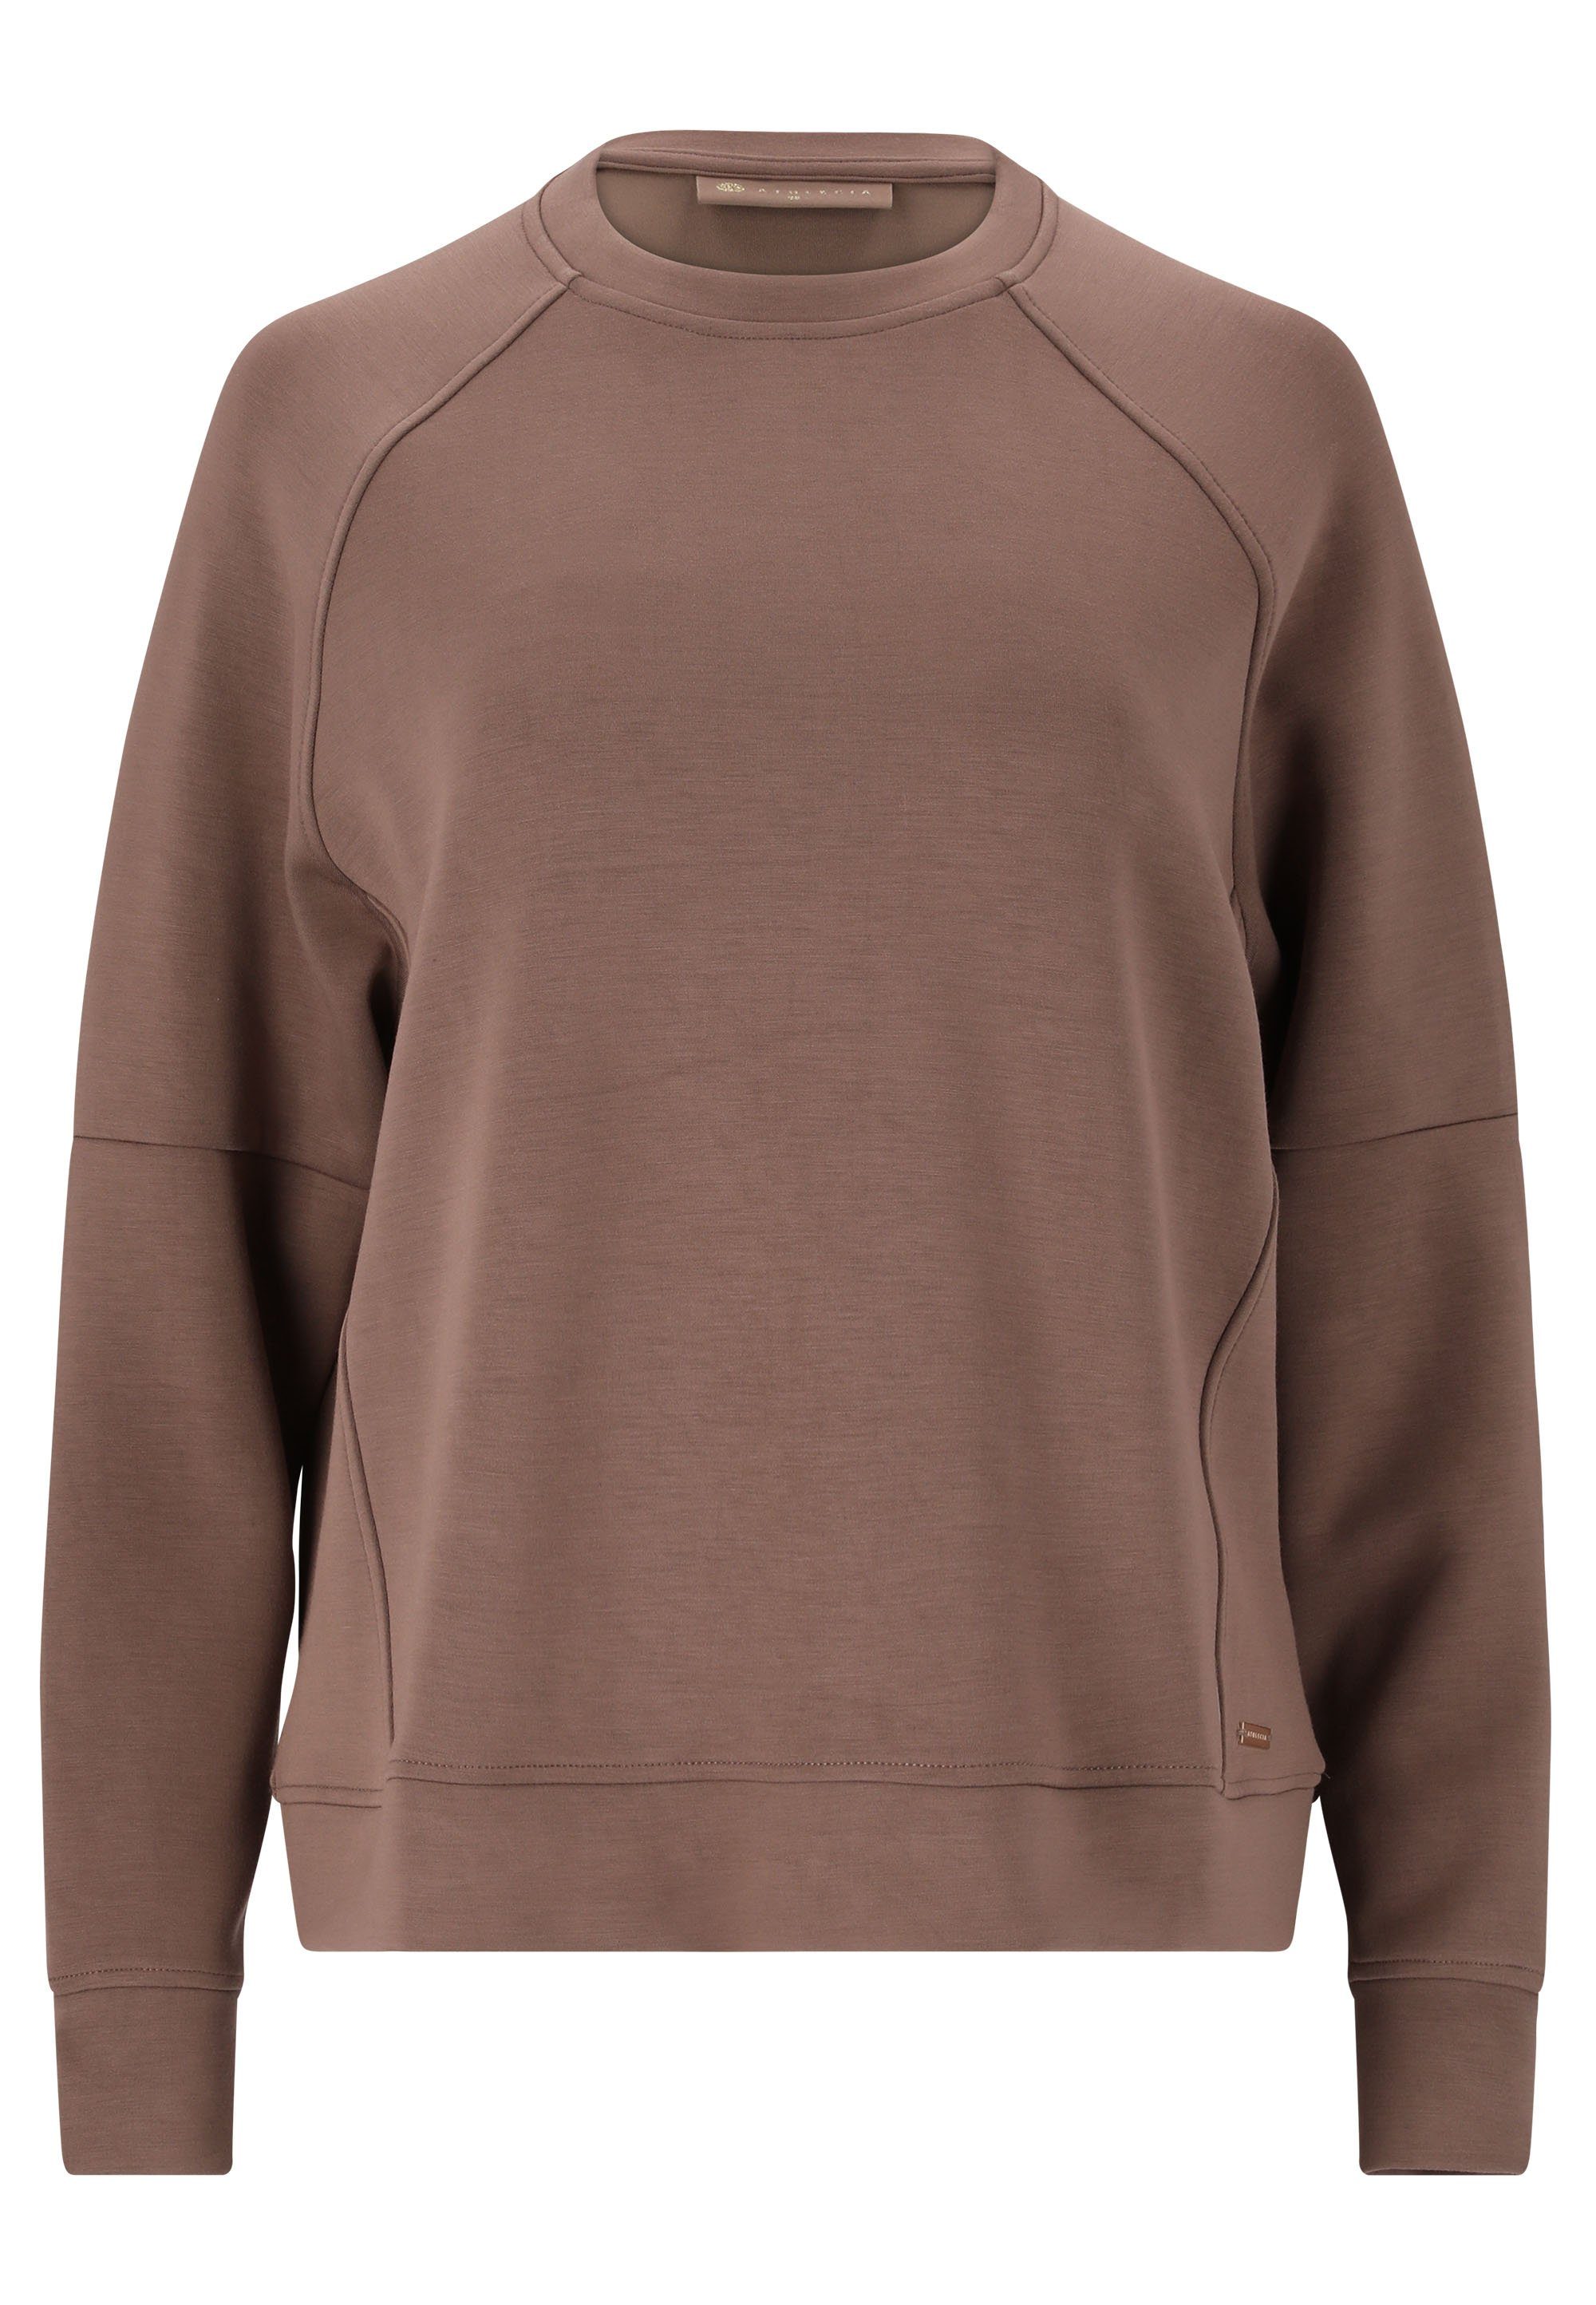 ATHLECIA Sweatshirt Jacey aus extra weichem Material, Sweatshirt für  Training und Freizeit von ENDURANCE ATHLECIA | Rollkragenpullover